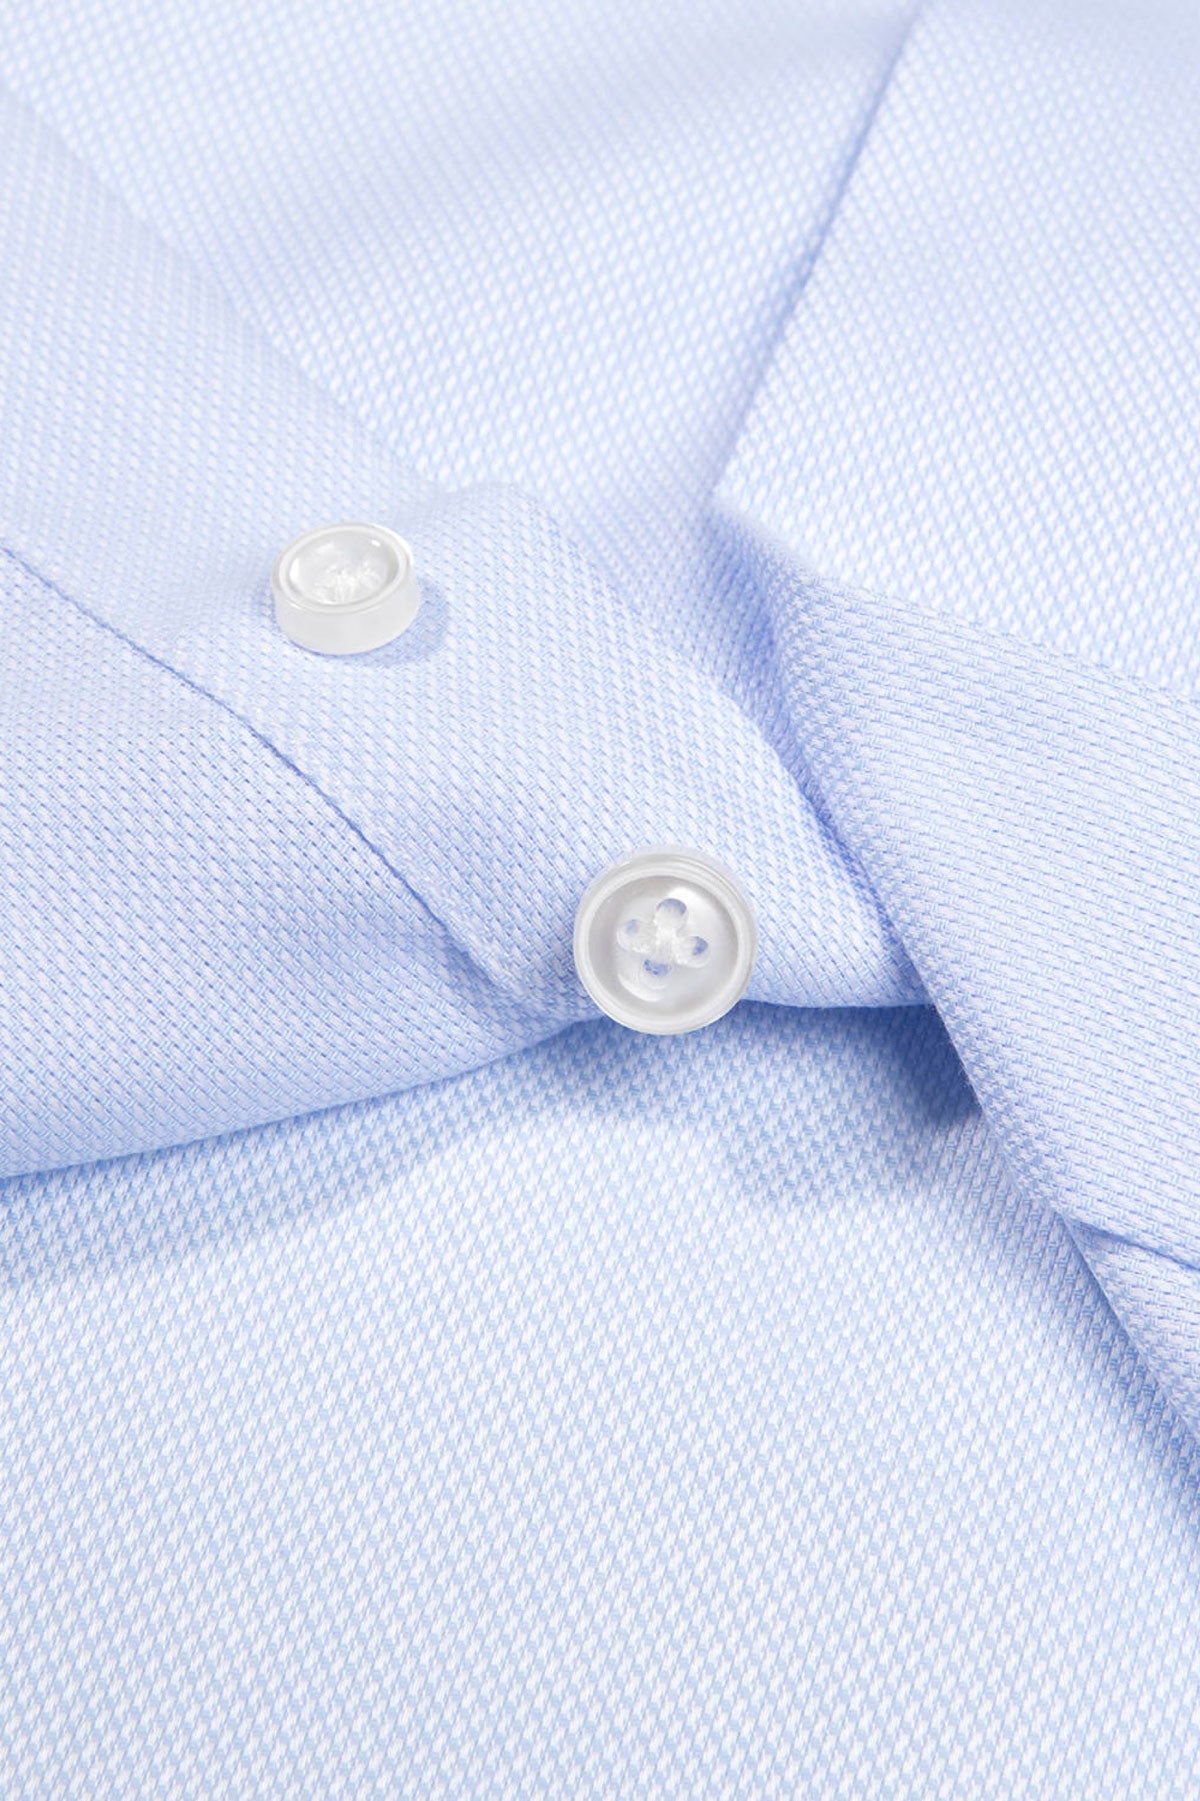 Strijkvrij Overhemd - Hemelsblauw Jacquard - Overhemd - Vercate - Vercate - Overhemden - Strijkvrije overhemden - Heren